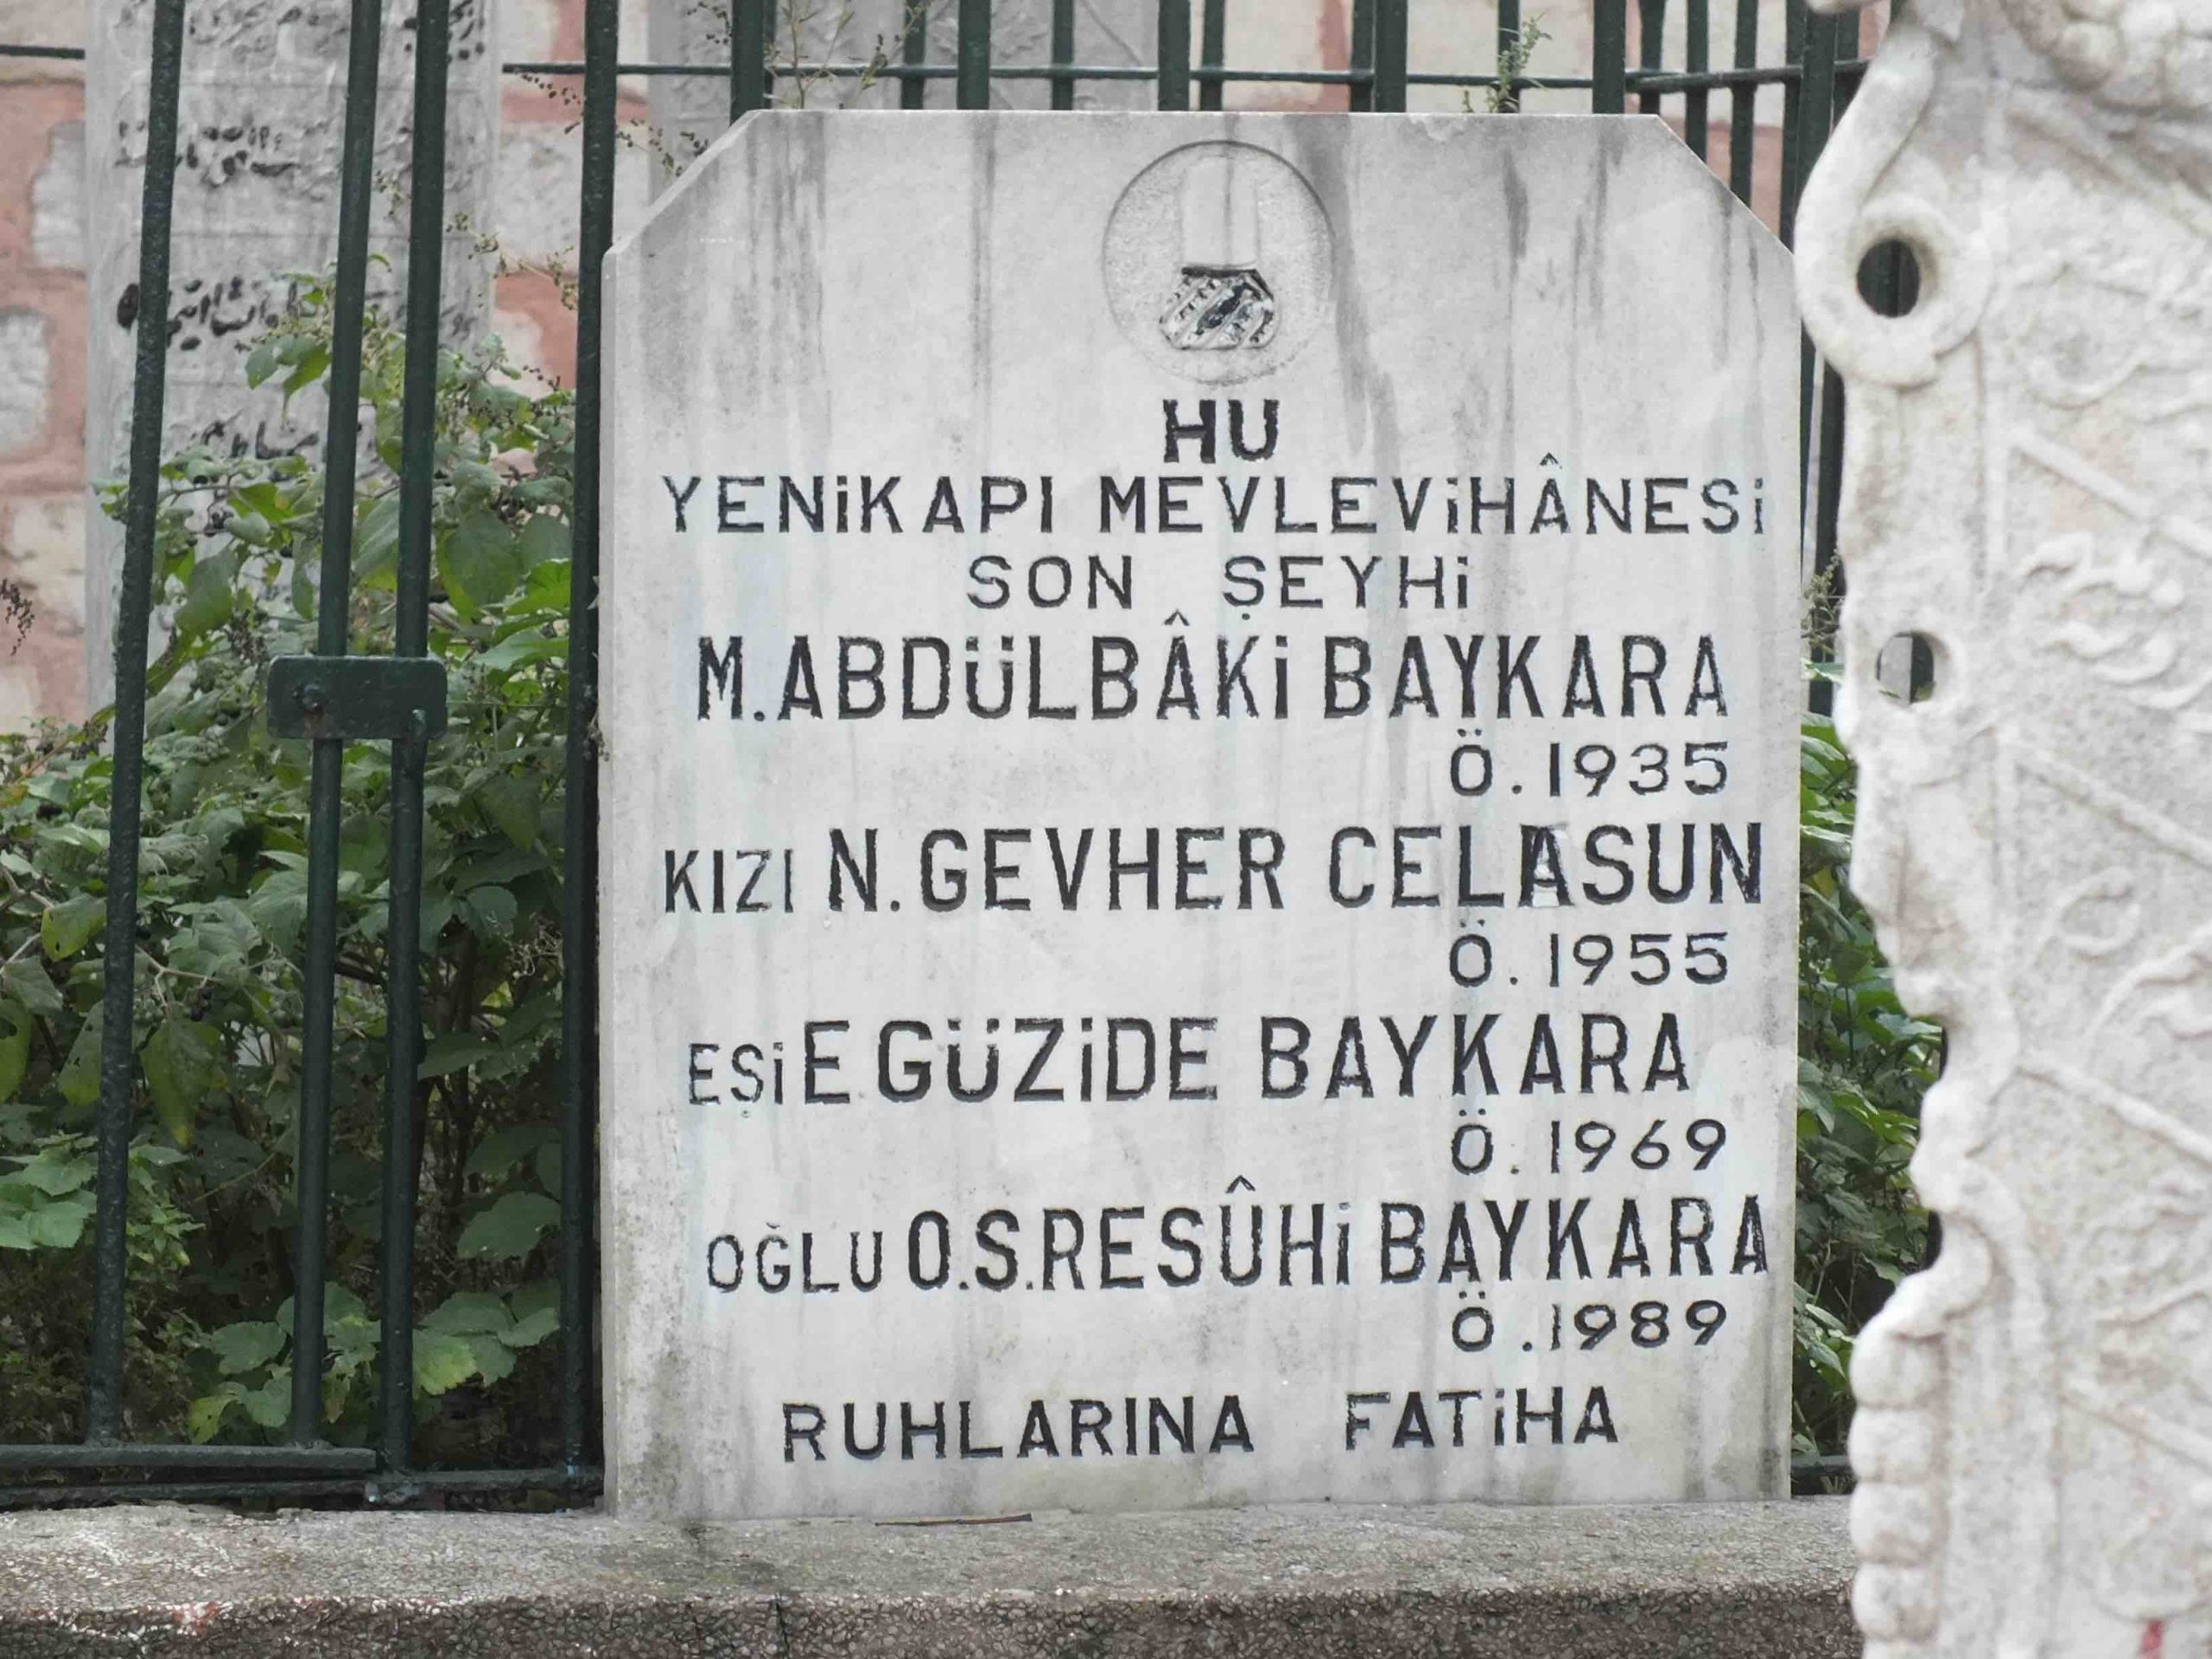 Abdulbaki Baykara